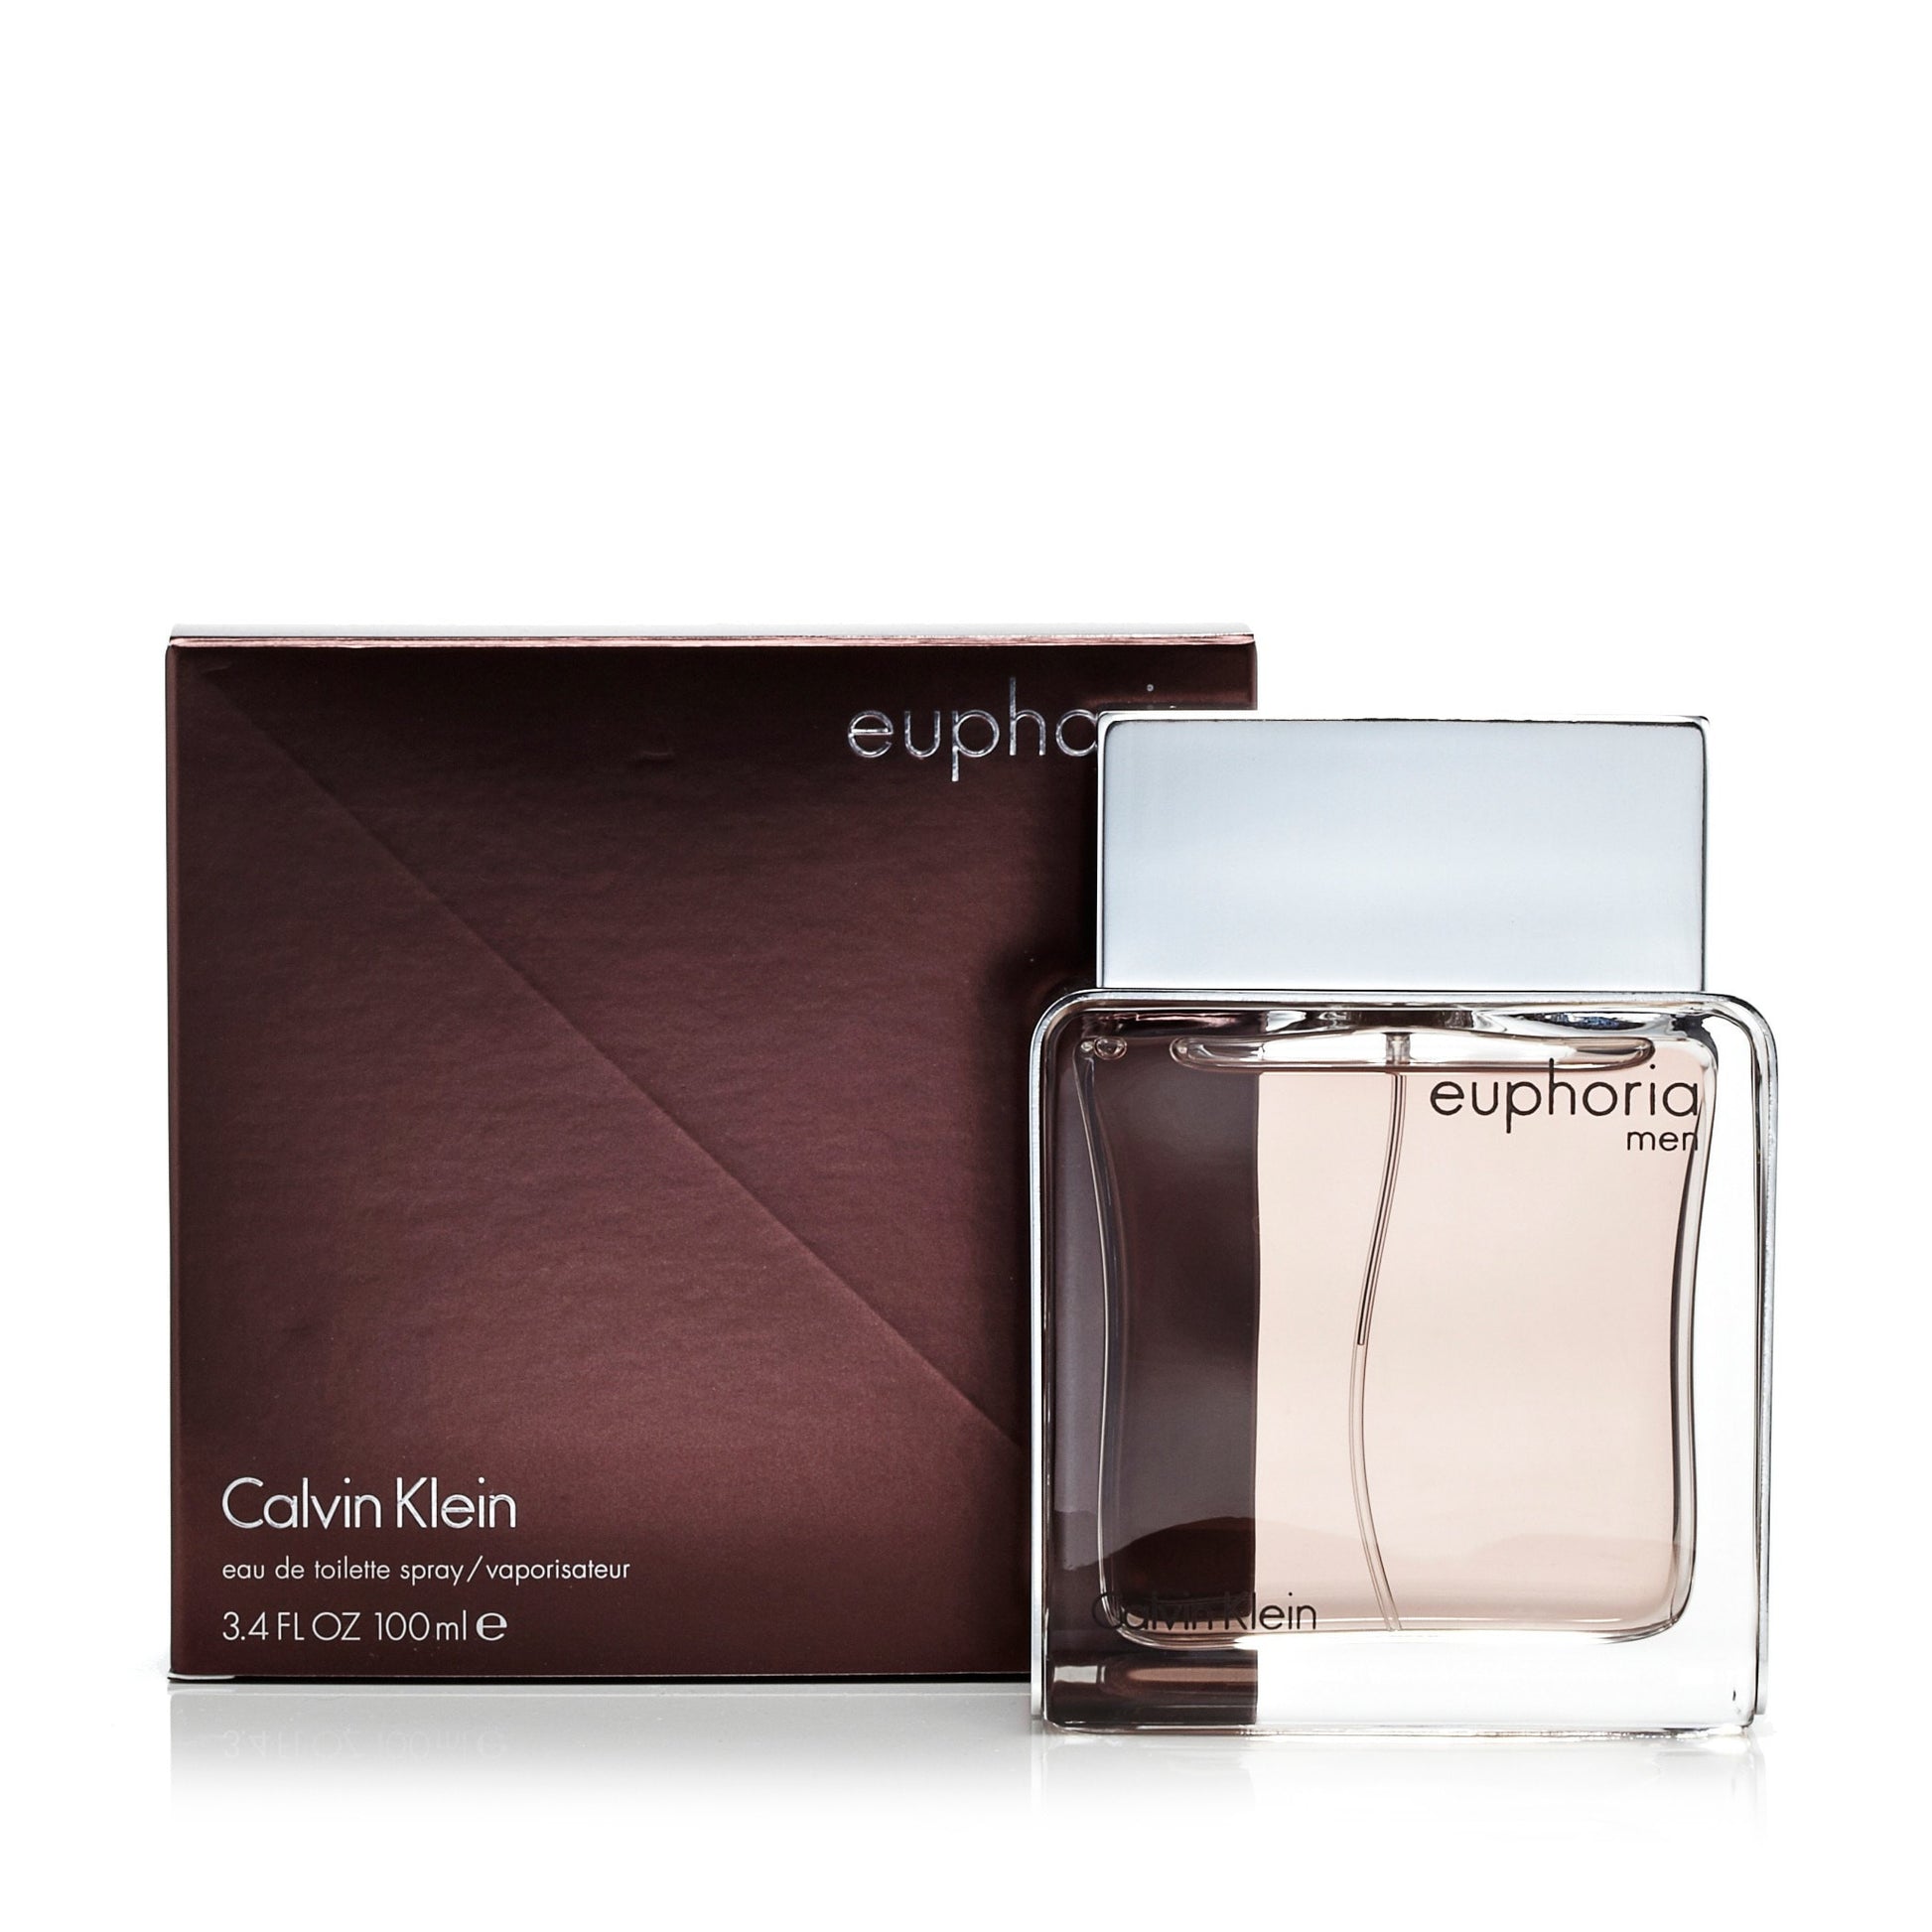 Euphoria Eau de Toilette Spray for Men by Calvin Klein 3.4 oz. Click to open in modal